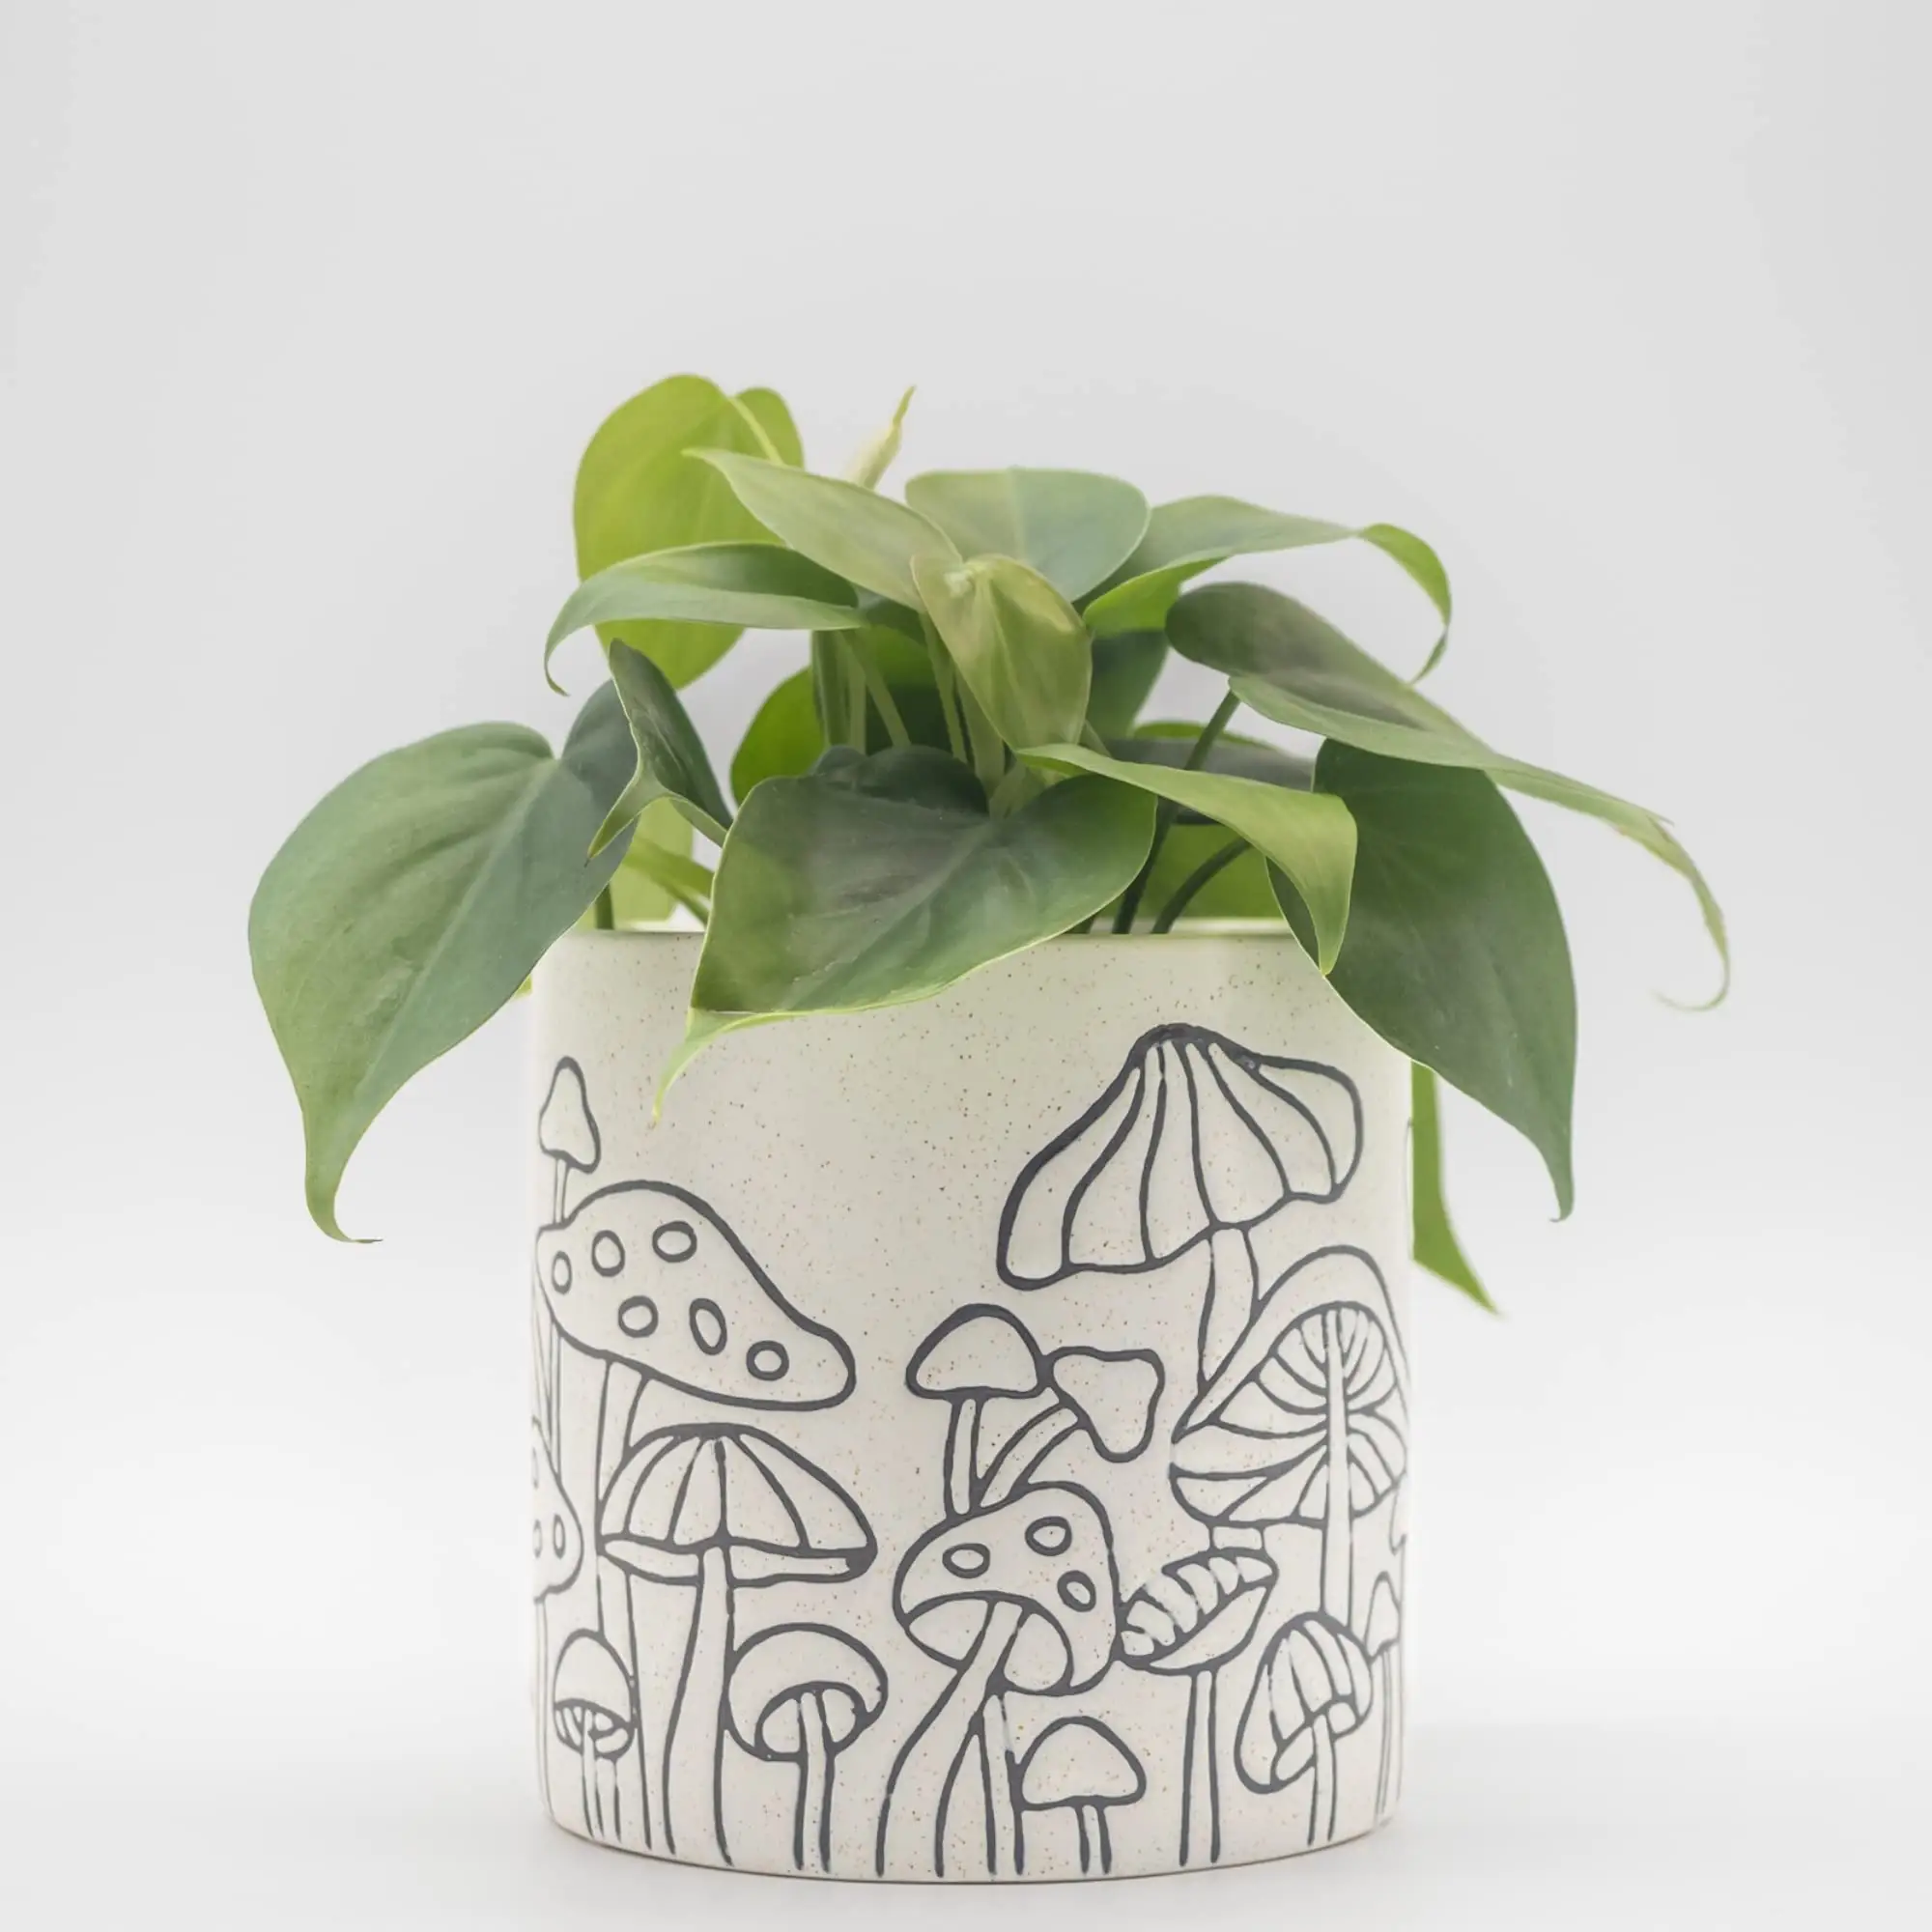 Niseven Unieke Retro Plant Pot Creatieve Keramische Champignonplanter Potten Voor Huis En Tuin Planter Potdecoratie